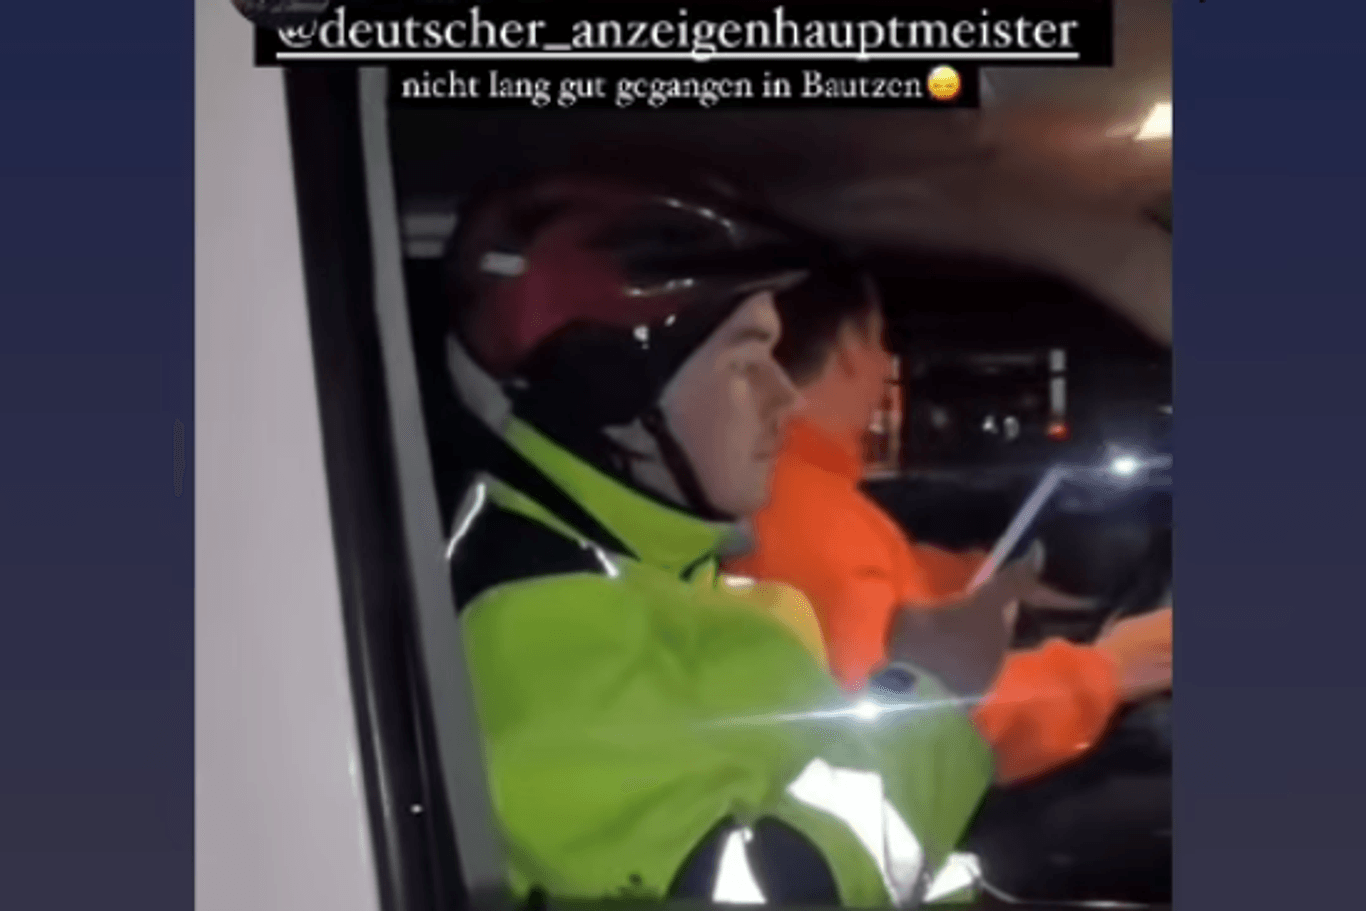 Dieses Video, das vor dem Übergriff entstand, teilte de Anzeigenhauptmeister aus Bautzen.